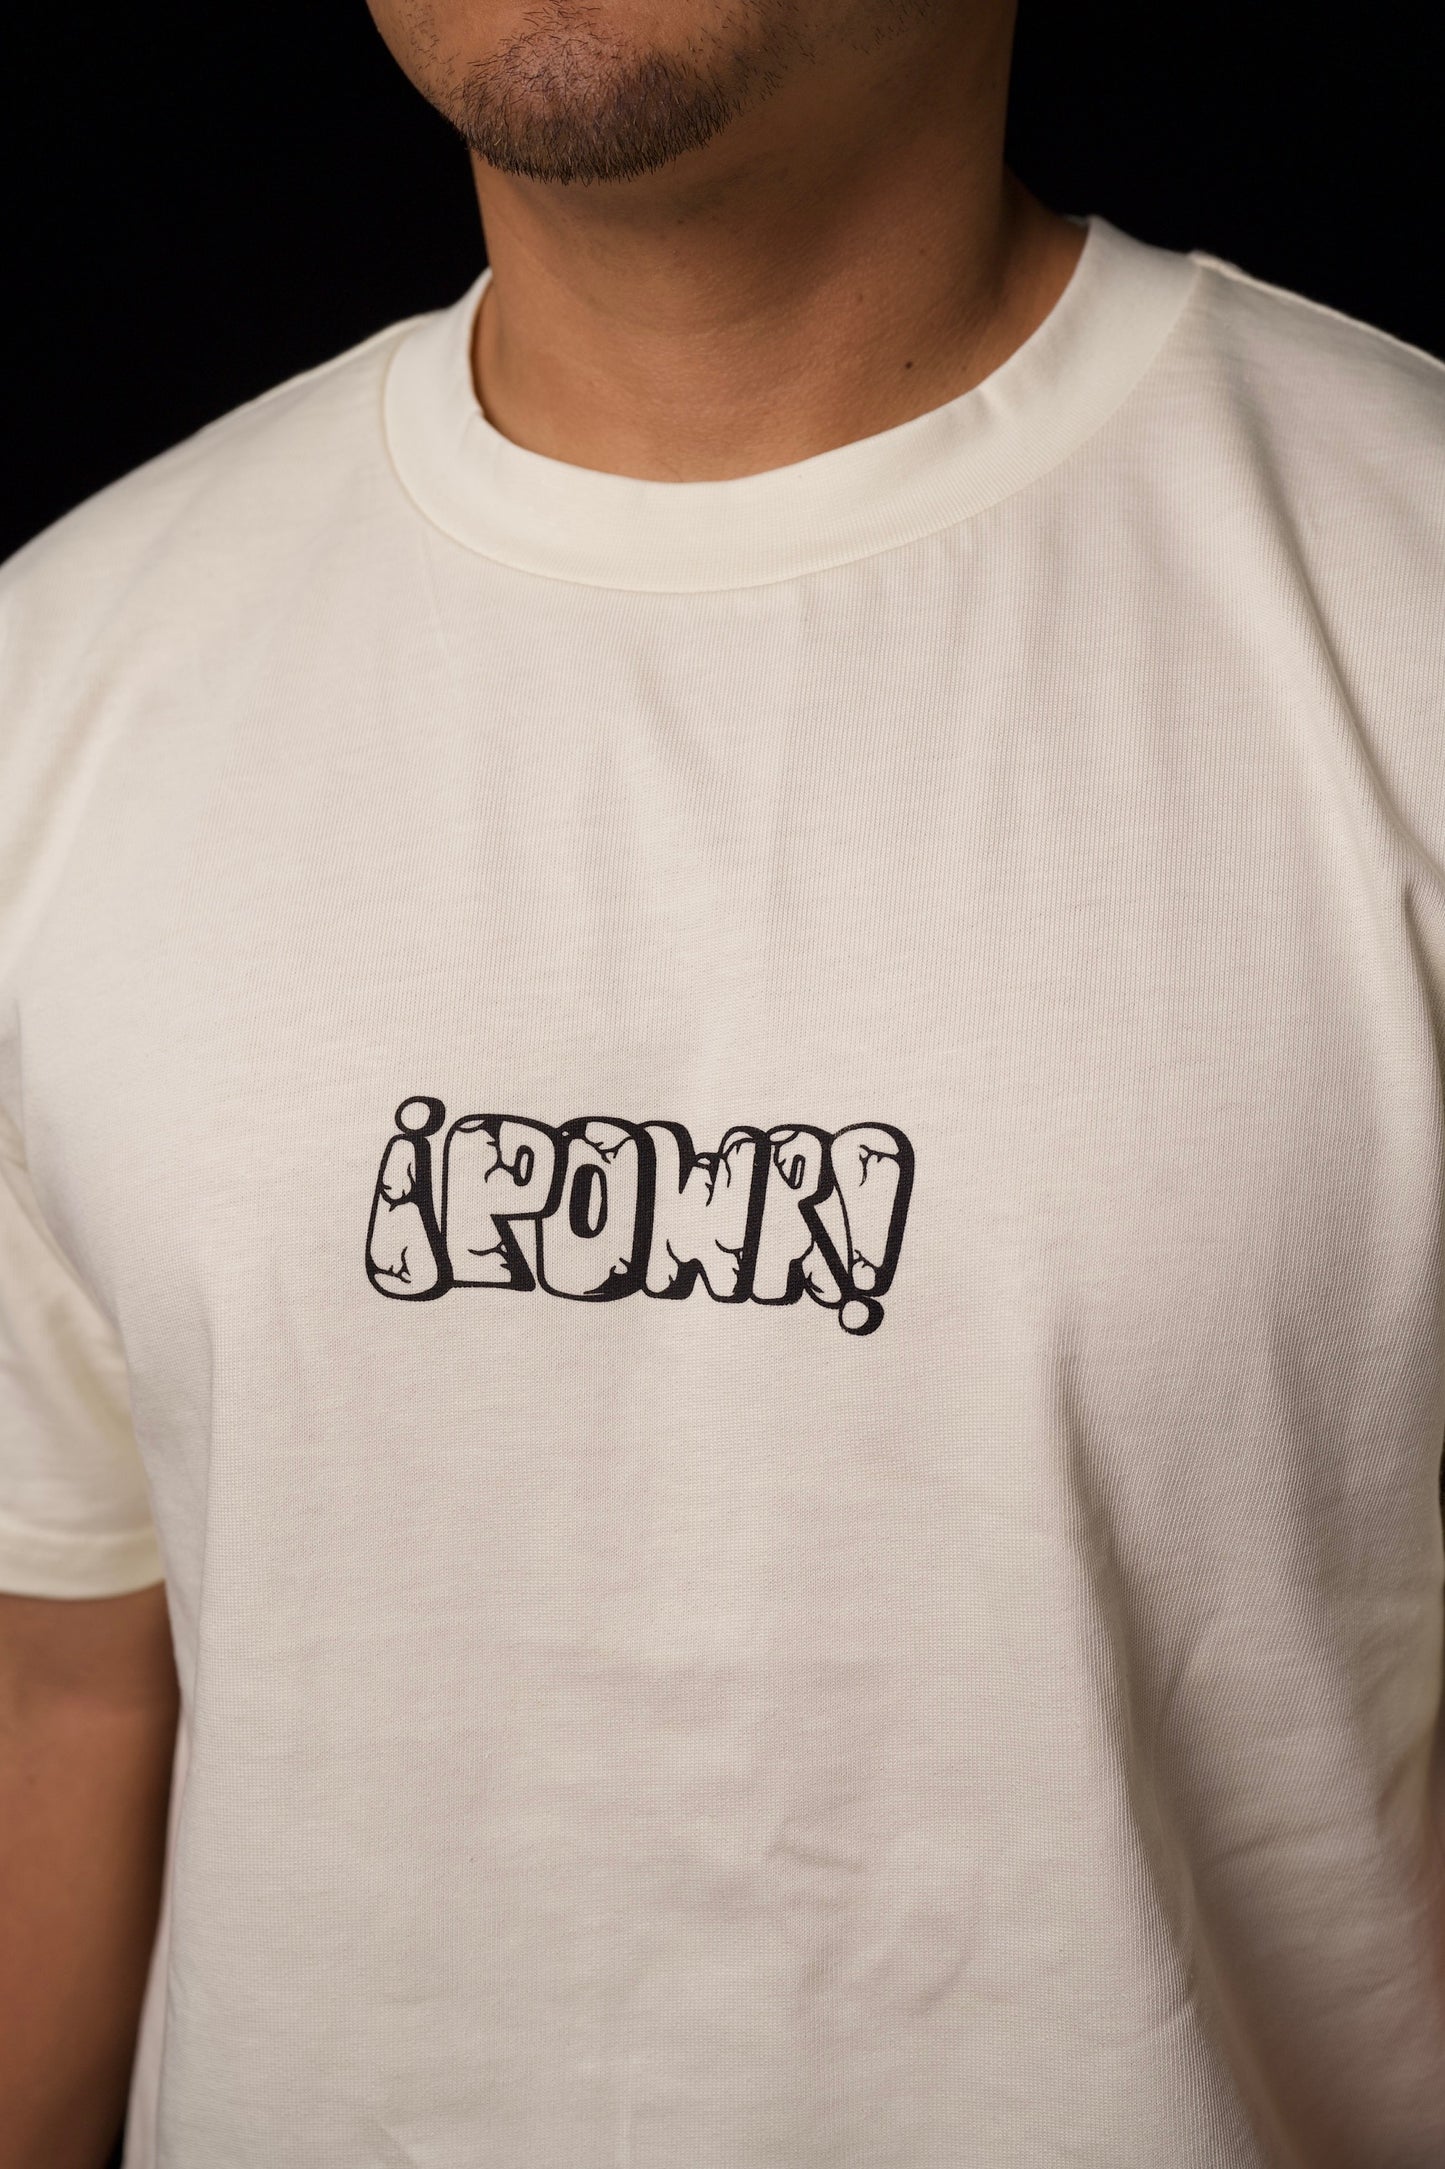 POWR T-shirt